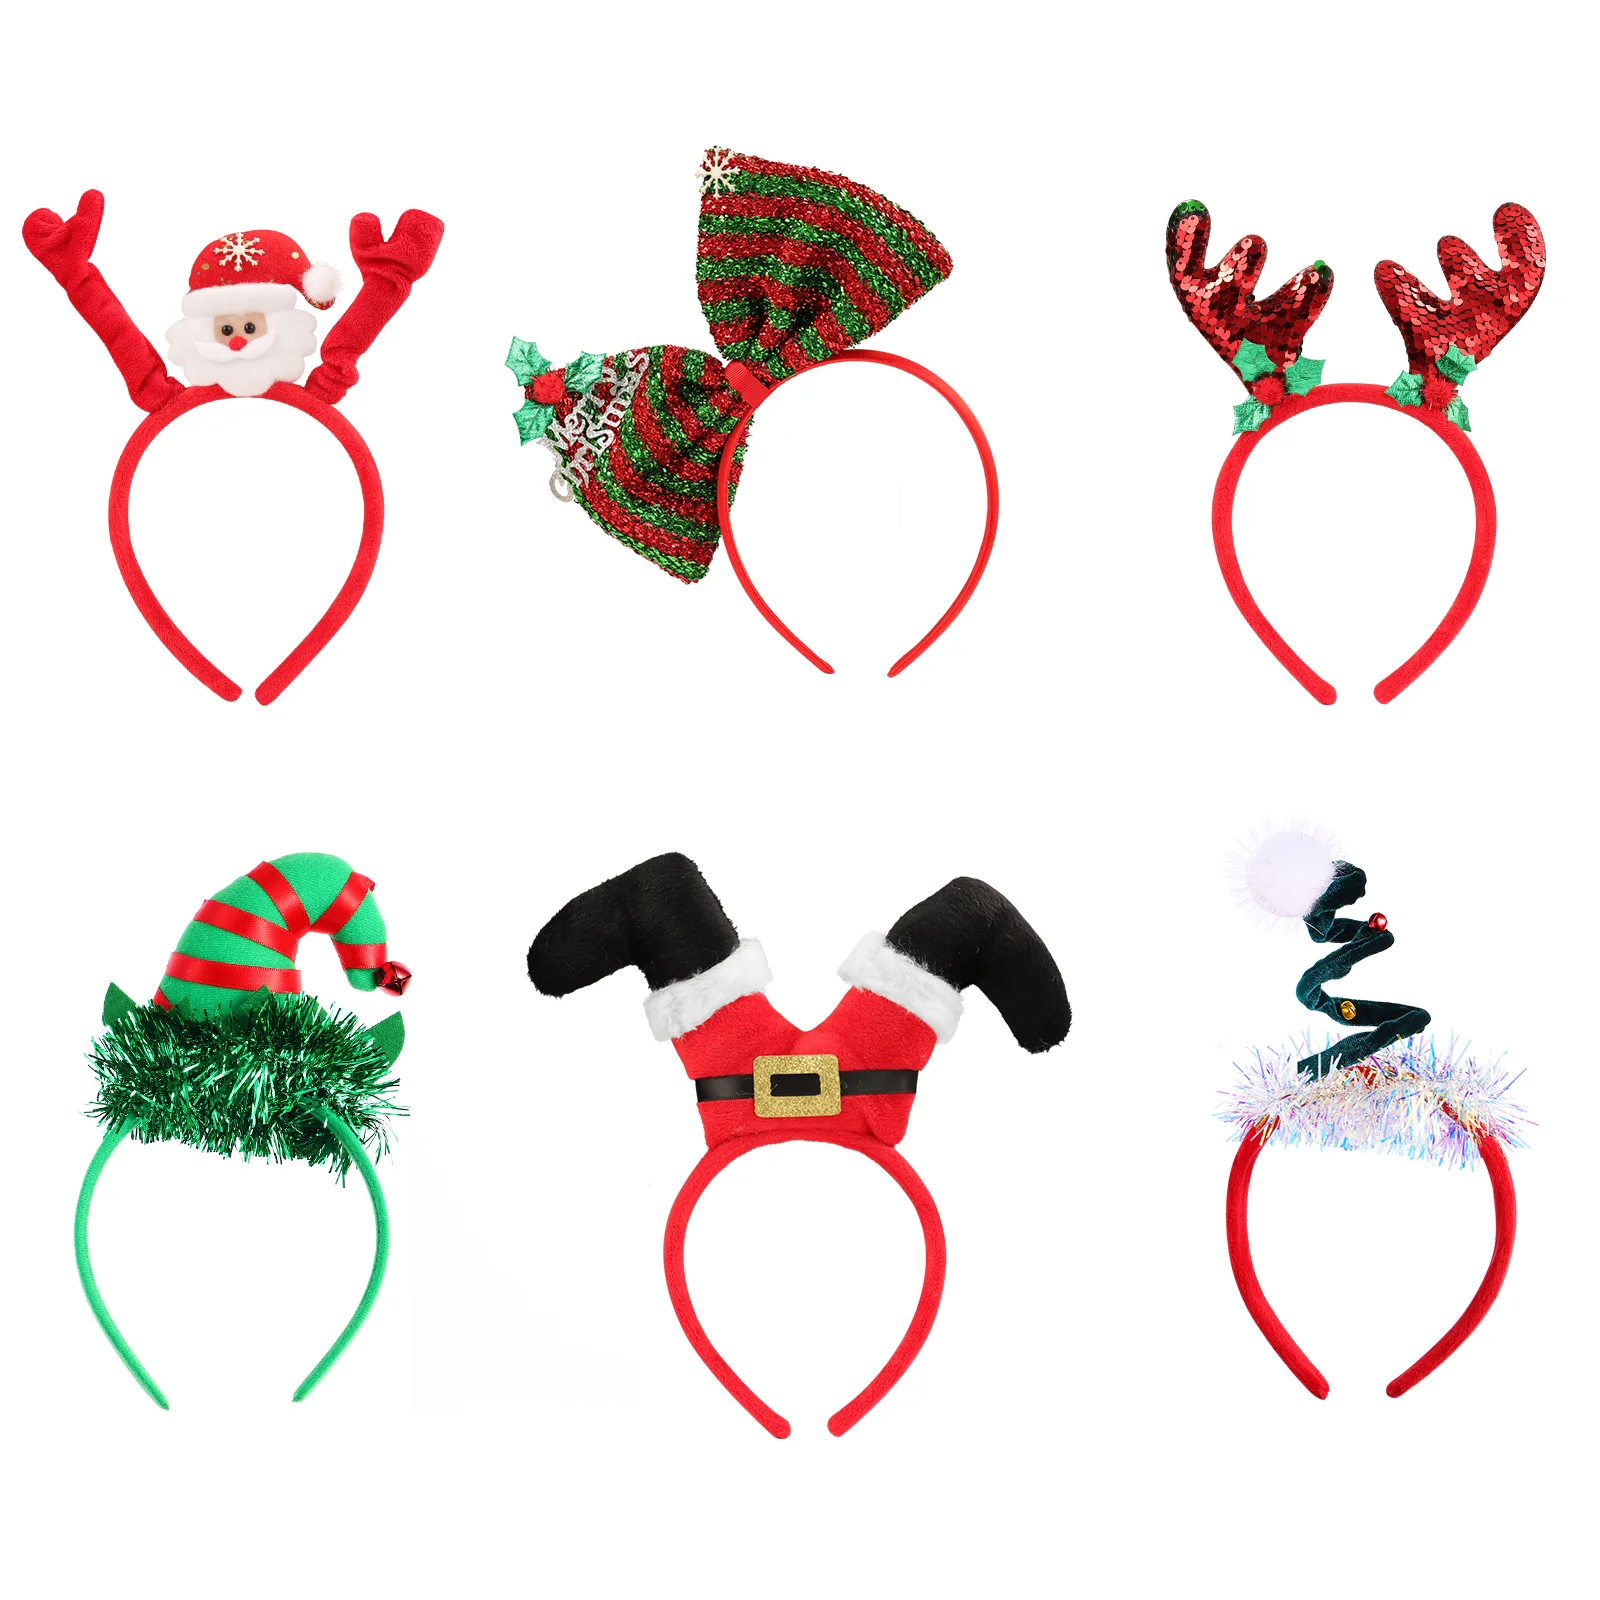 

6 шт. рождественские повязки на голову Frcolor, необычные рождественские головные уборы, обручи для волос, аксессуары для волос, Детские и взрослые рождественские подарки